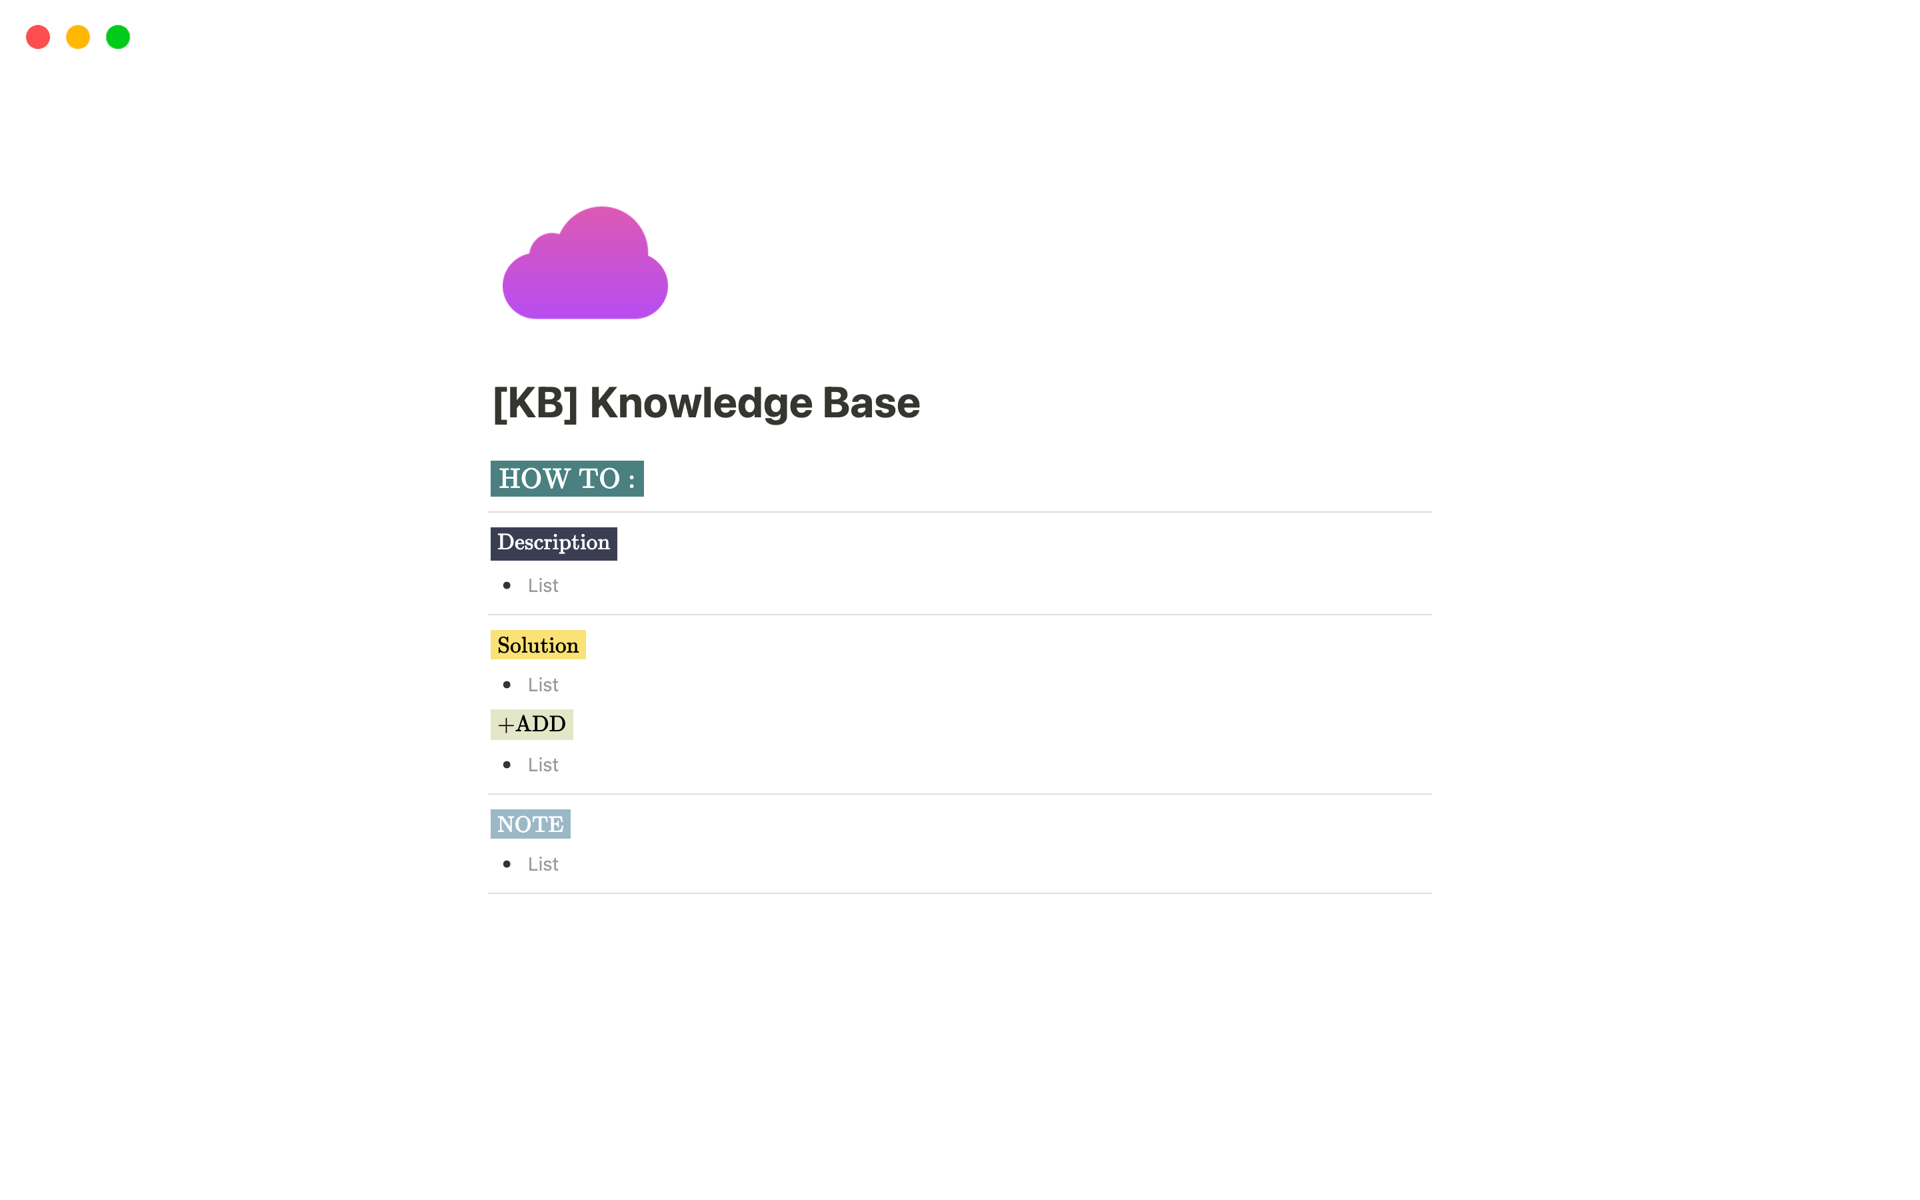 Uma prévia do modelo para [KB] Knowledge Base 